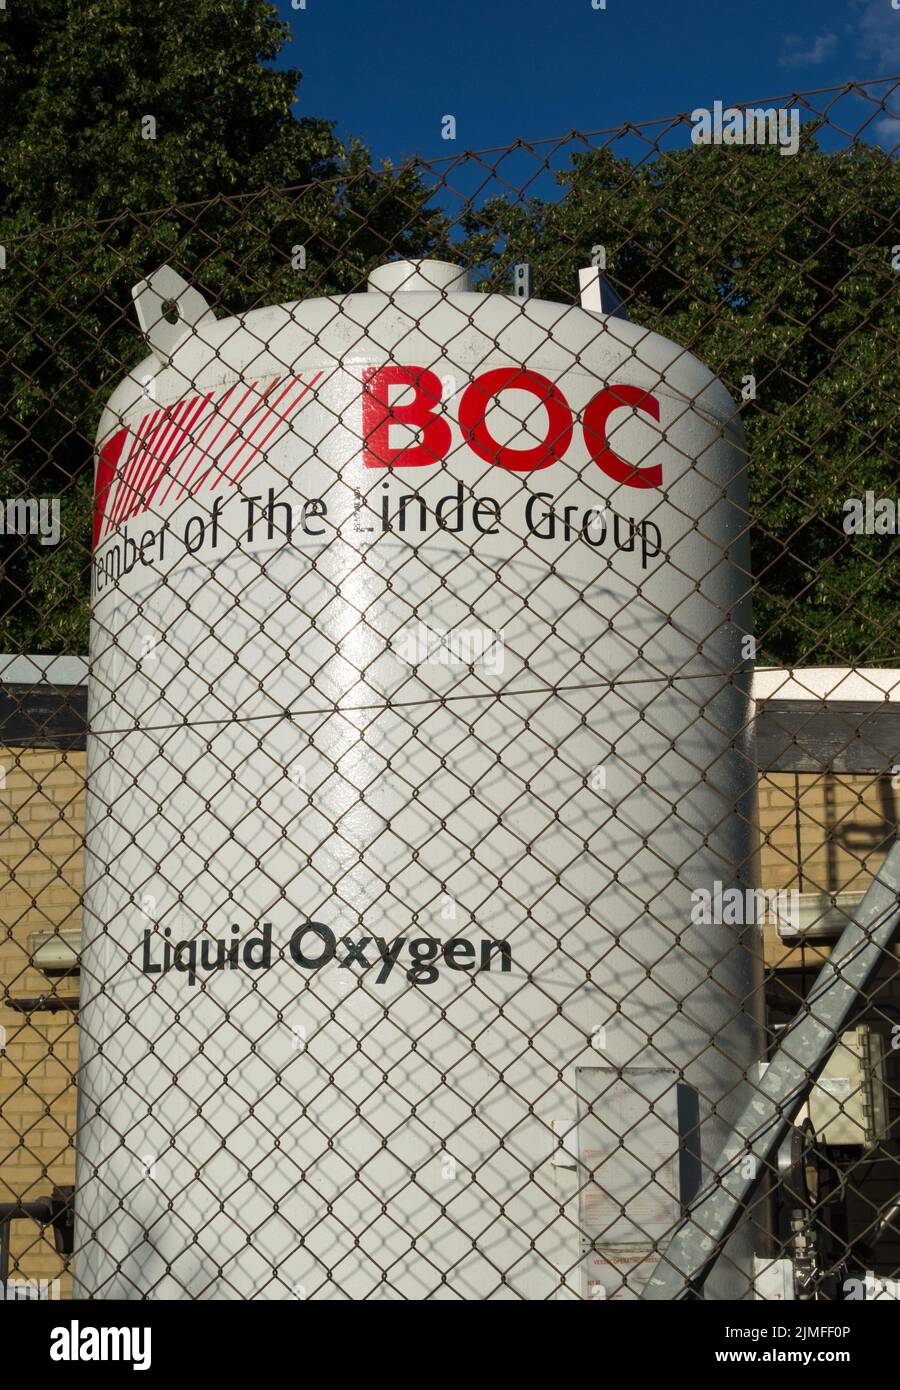 Un gran tanque de oxígeno líquido BOC en los terrenos de un hospital Foto de stock